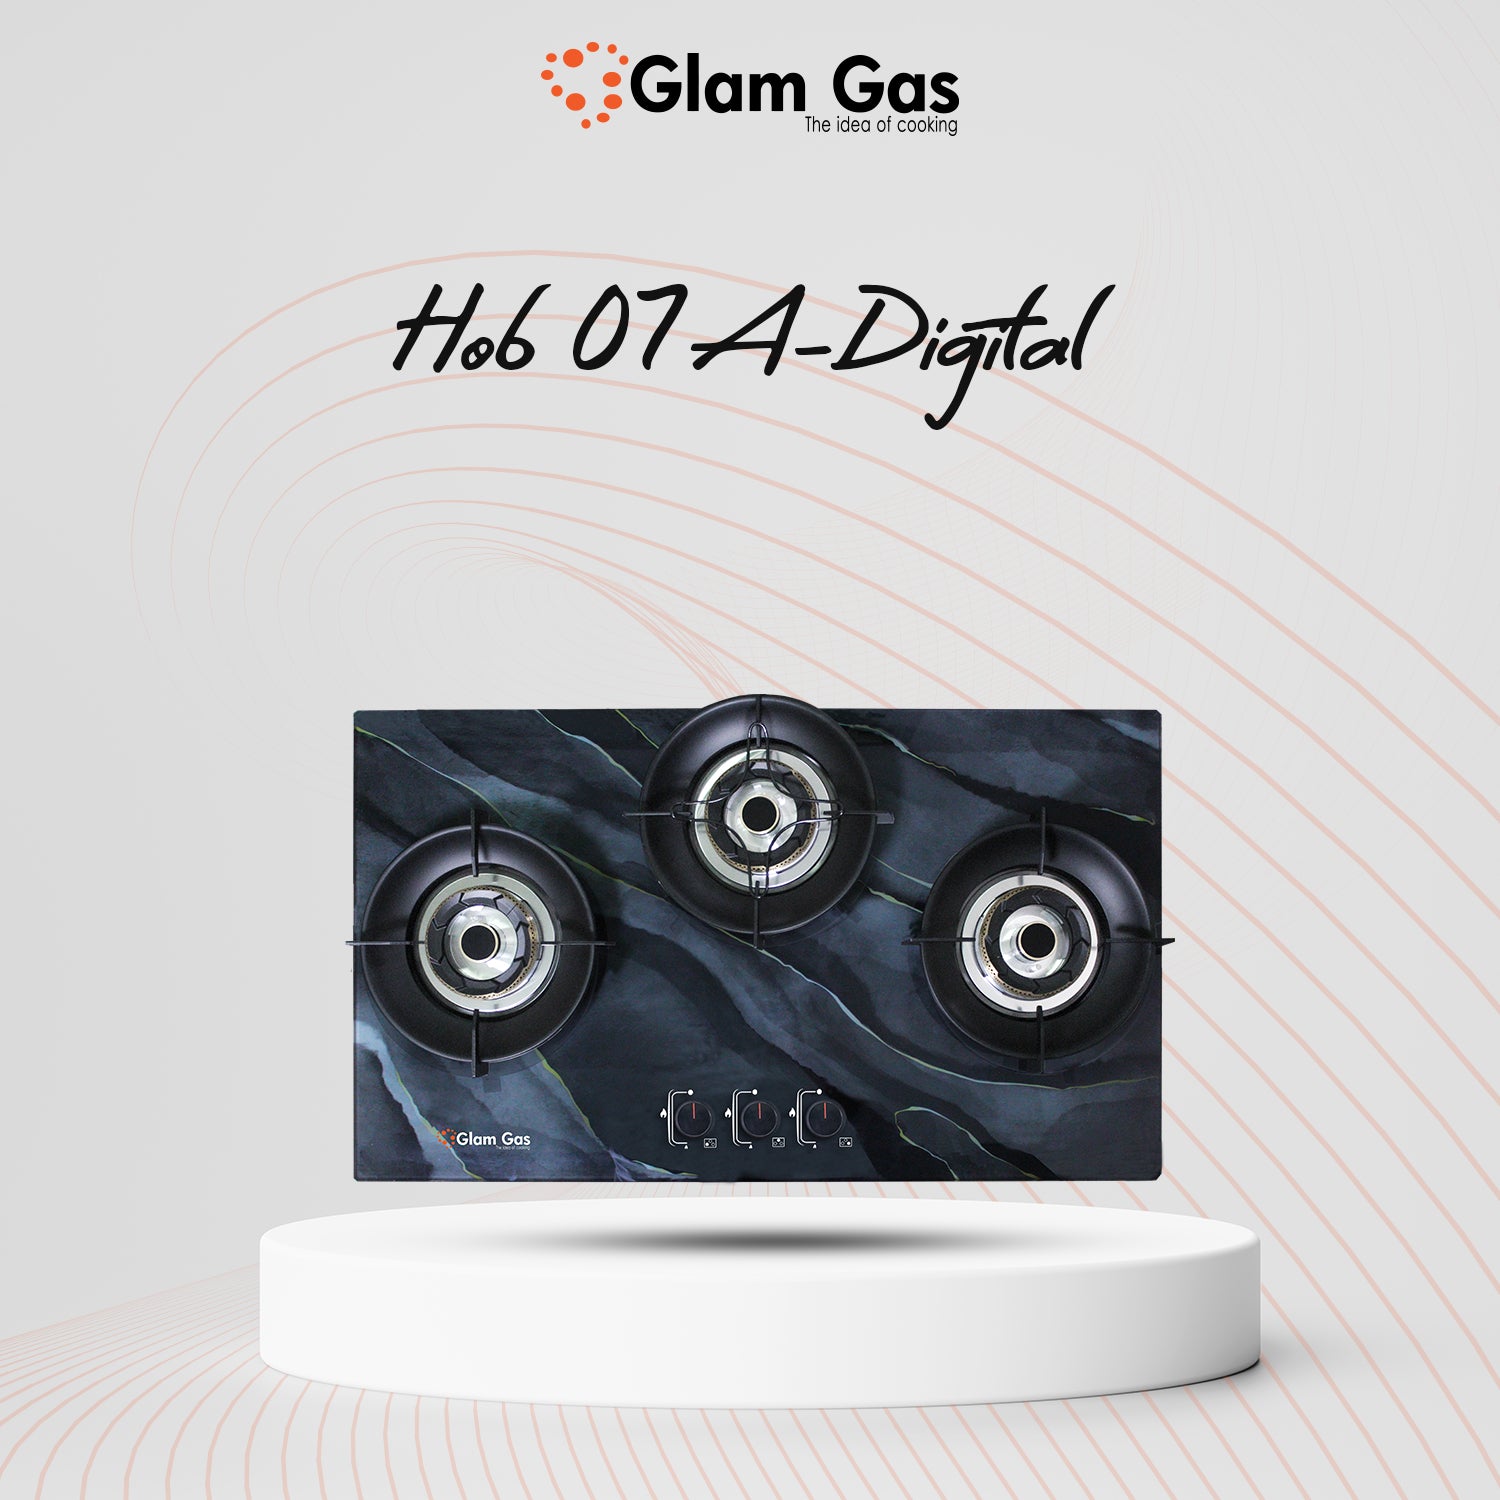 Gas Hob GG-07A Digital